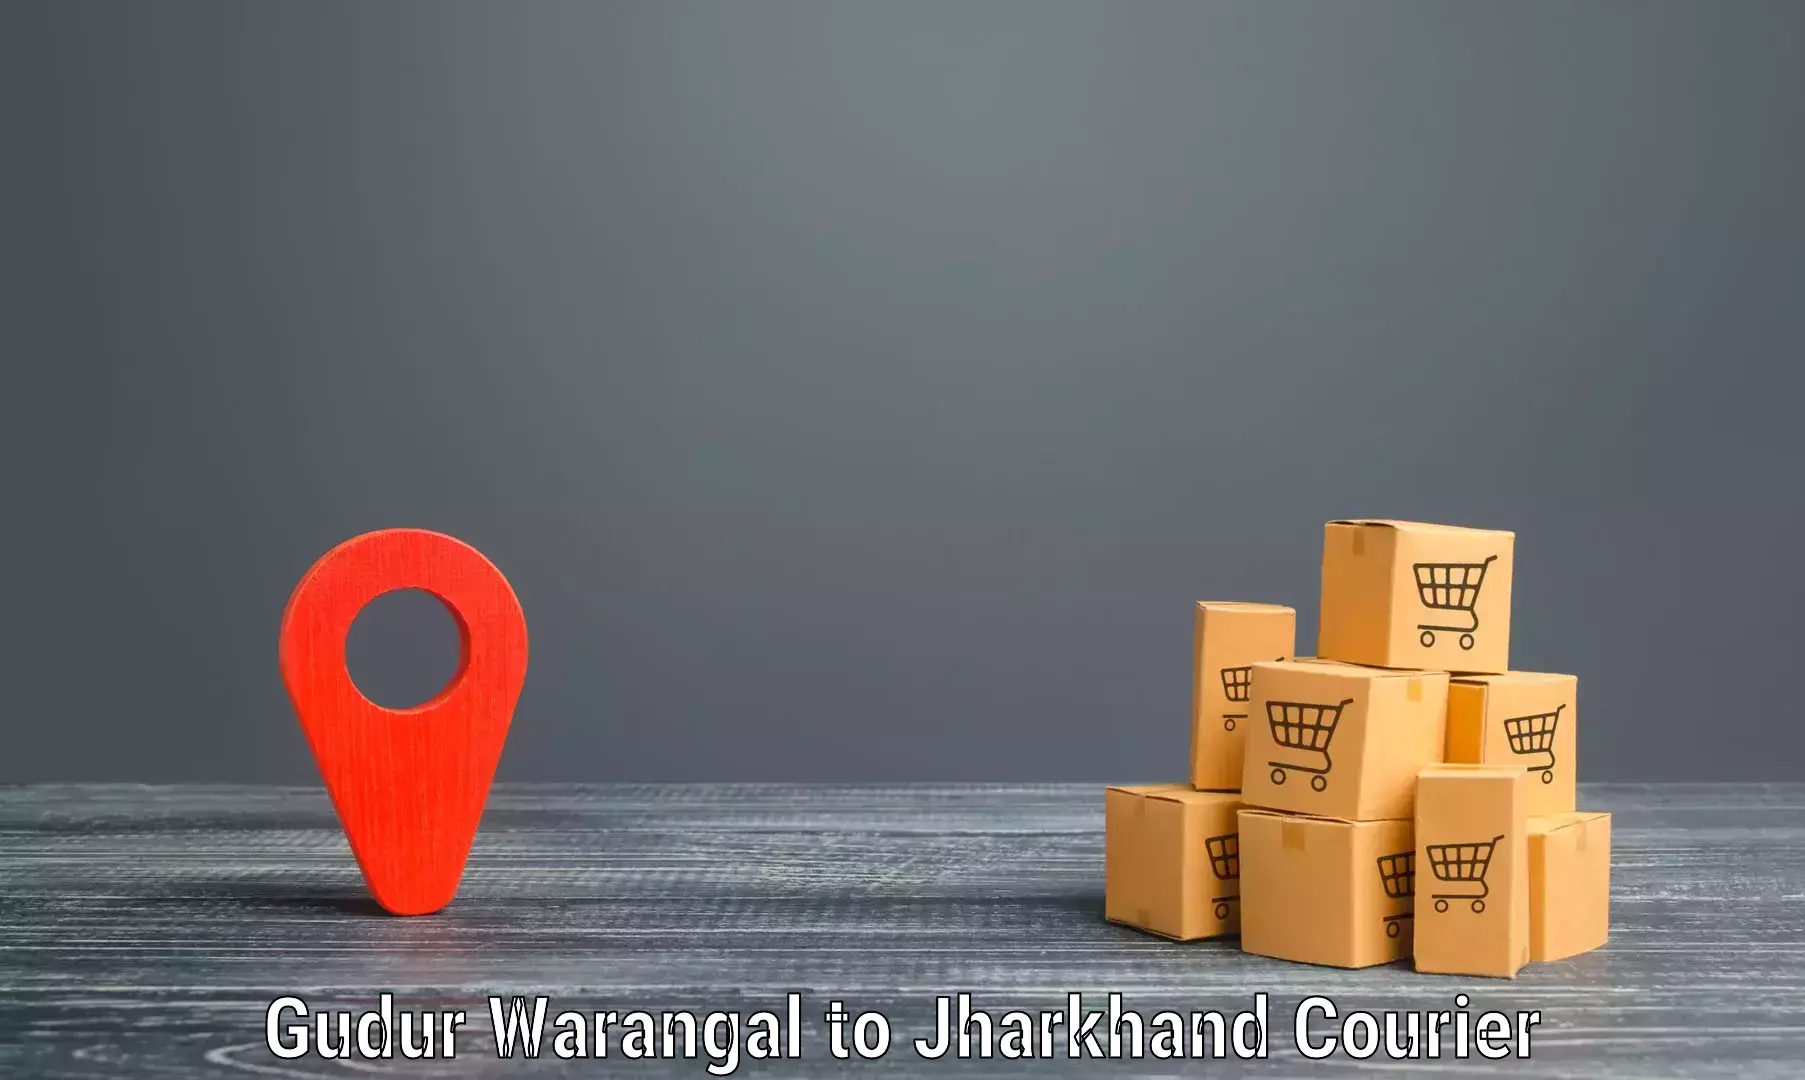 Next-generation courier services Gudur Warangal to Dhalbhumgarh